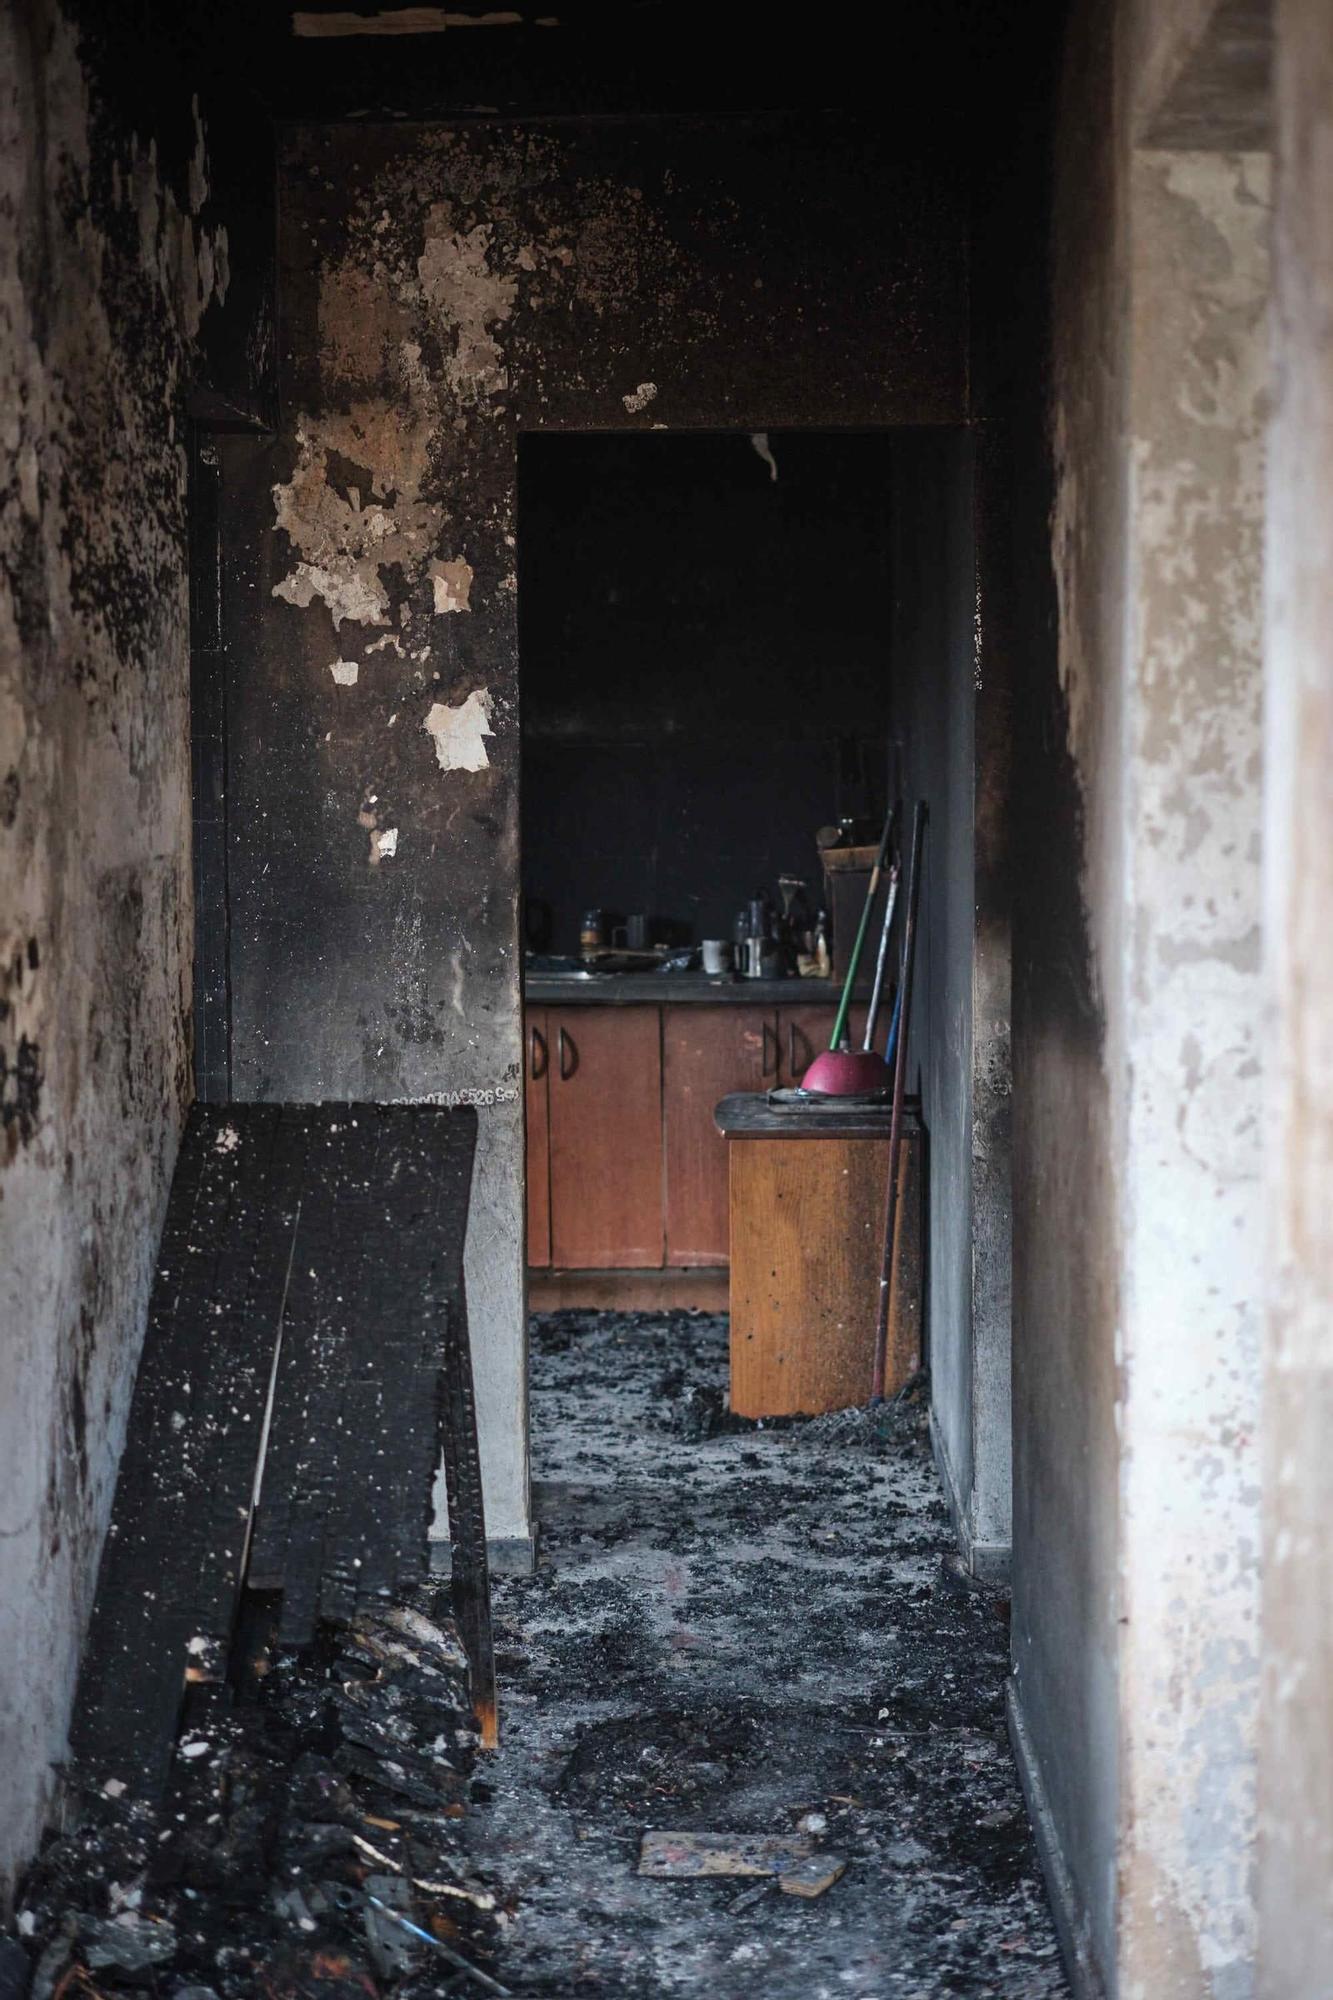 Un hombre incendia la casa con su pareja y su hijo dentro en Tenerife